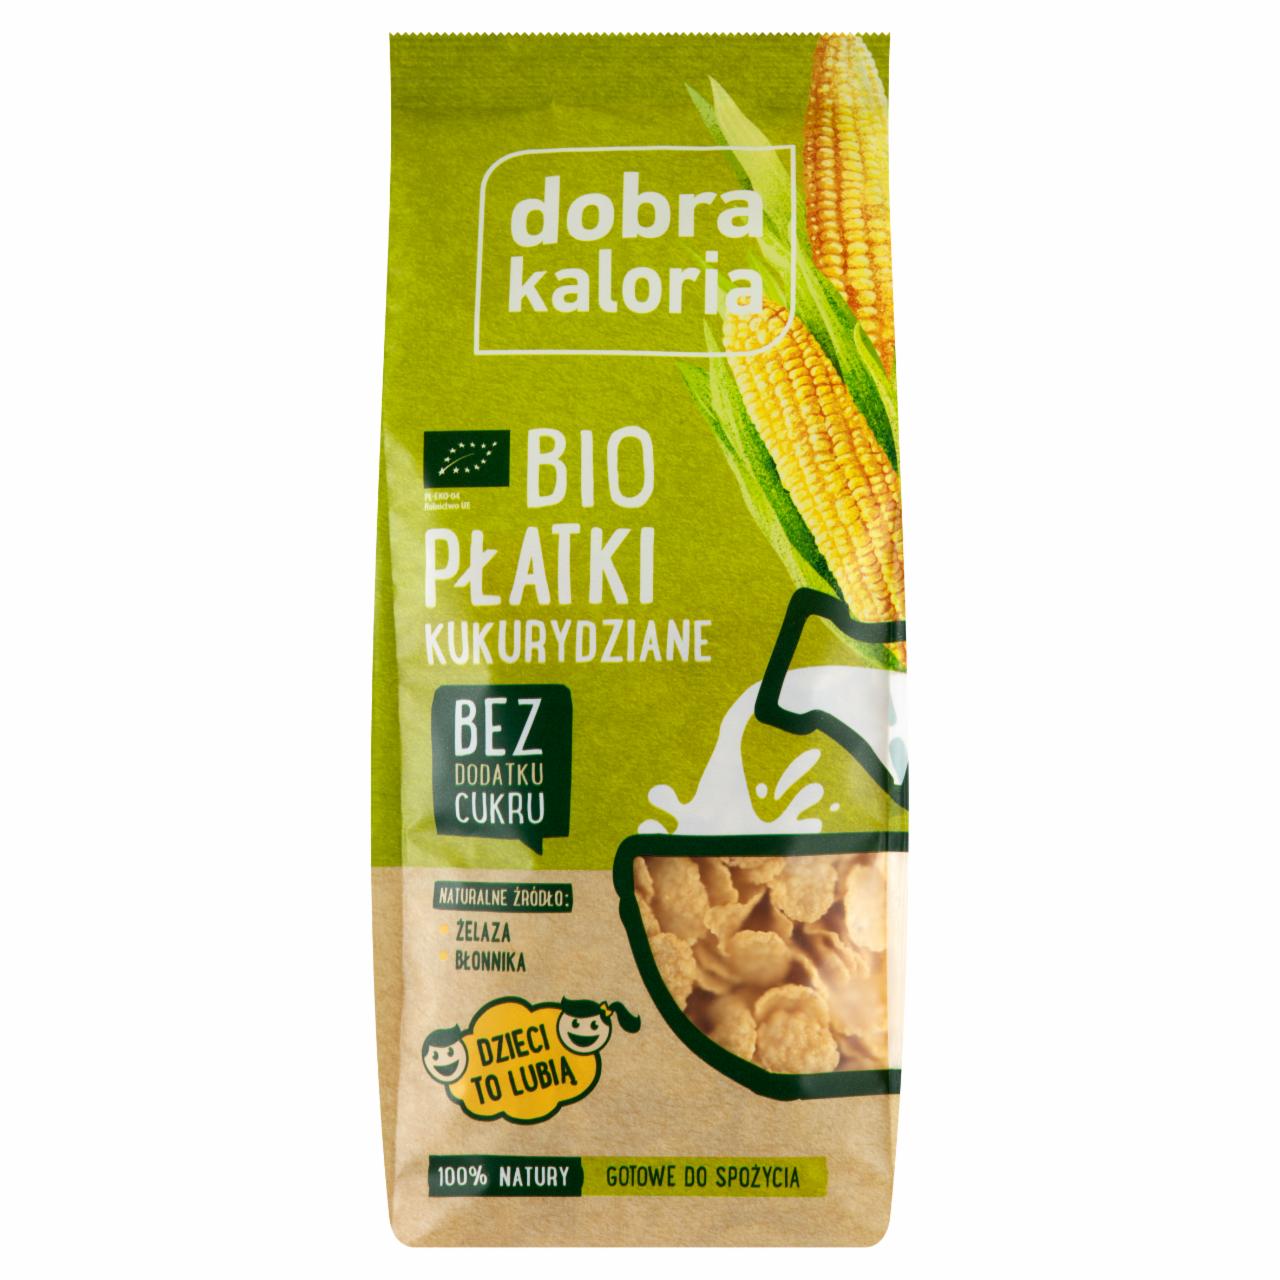 Zdjęcia - Dobra kaloria Bio płatki kukurydziane 200 g